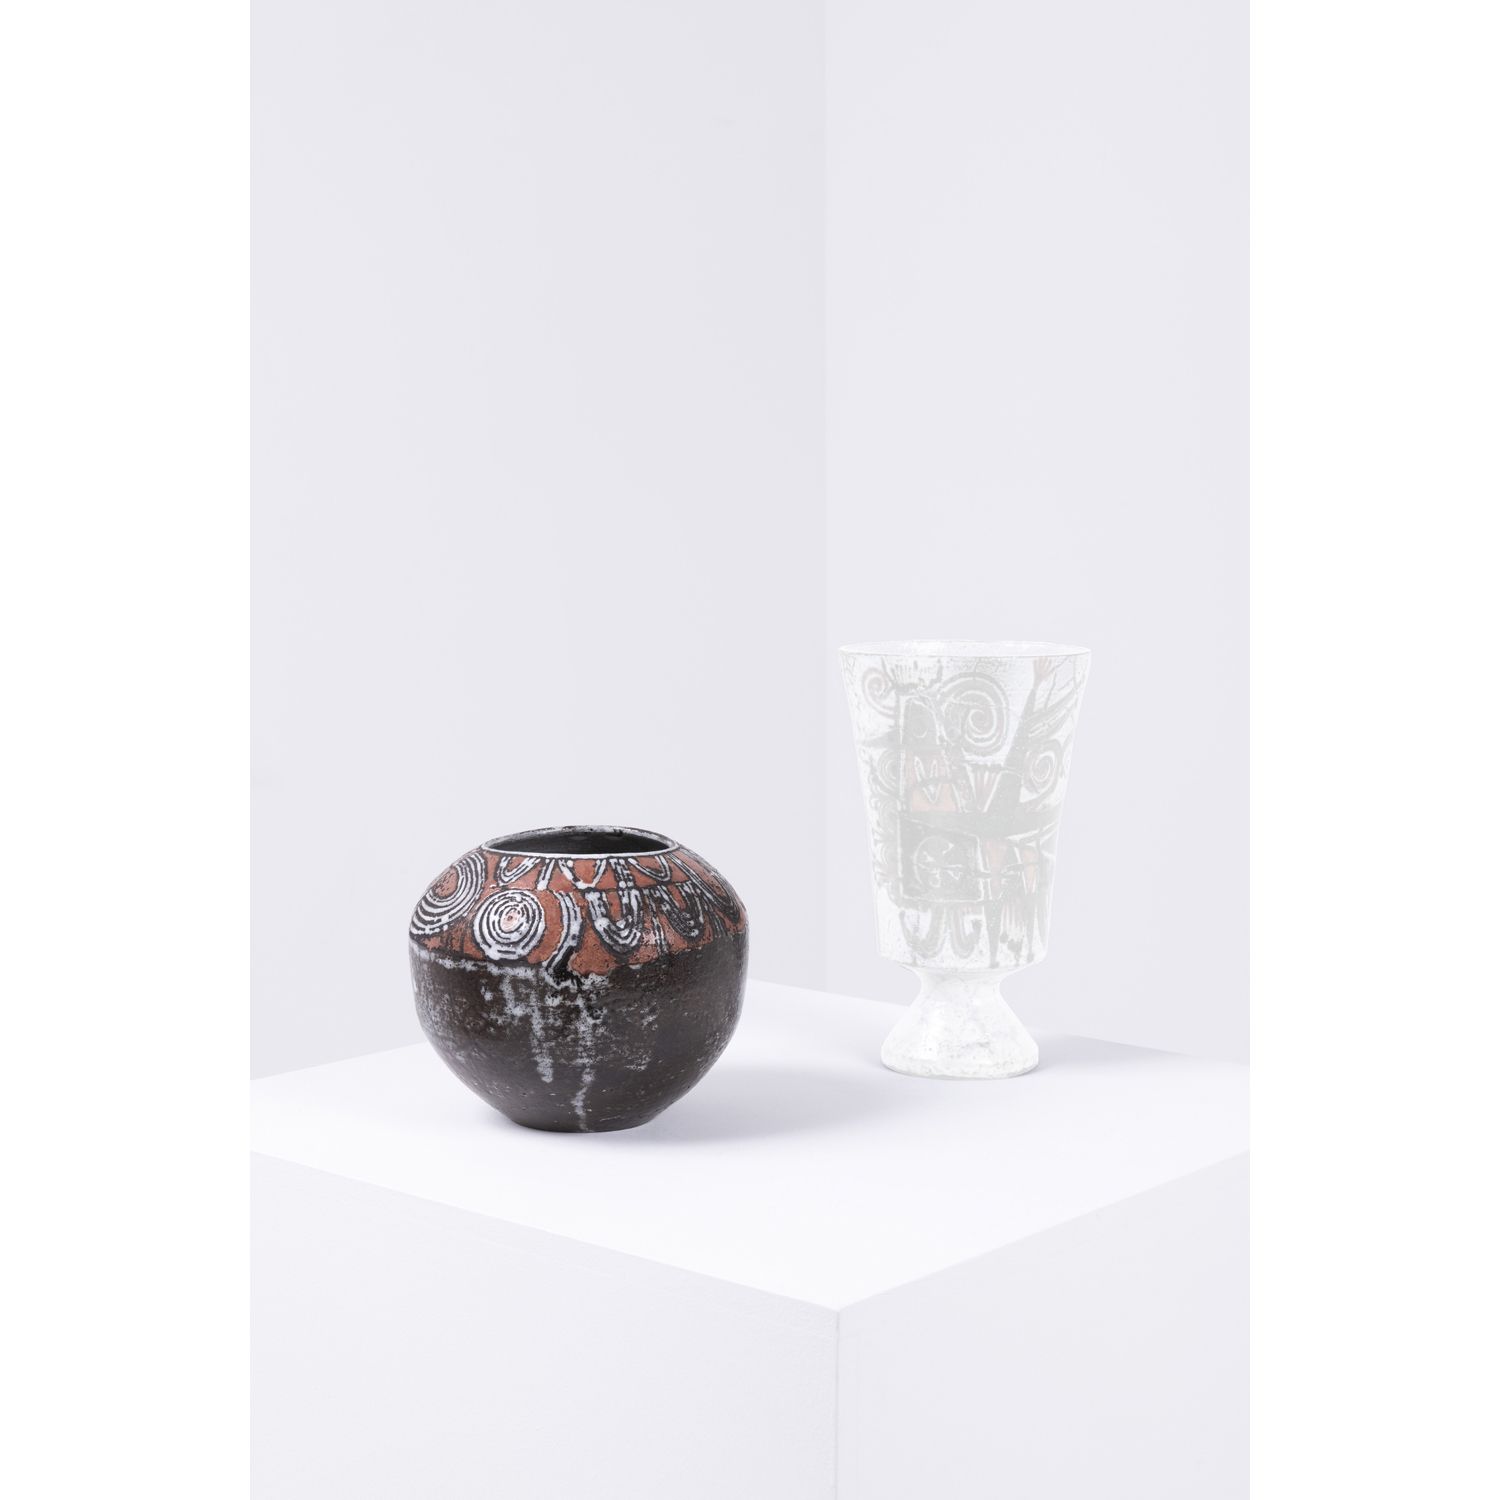 Jean Derval (1925-2010) Vase boule 让-德瓦尔(1925-2010)

球形花瓶

釉面陶瓷

1960年左右创建的模型

底&hellip;